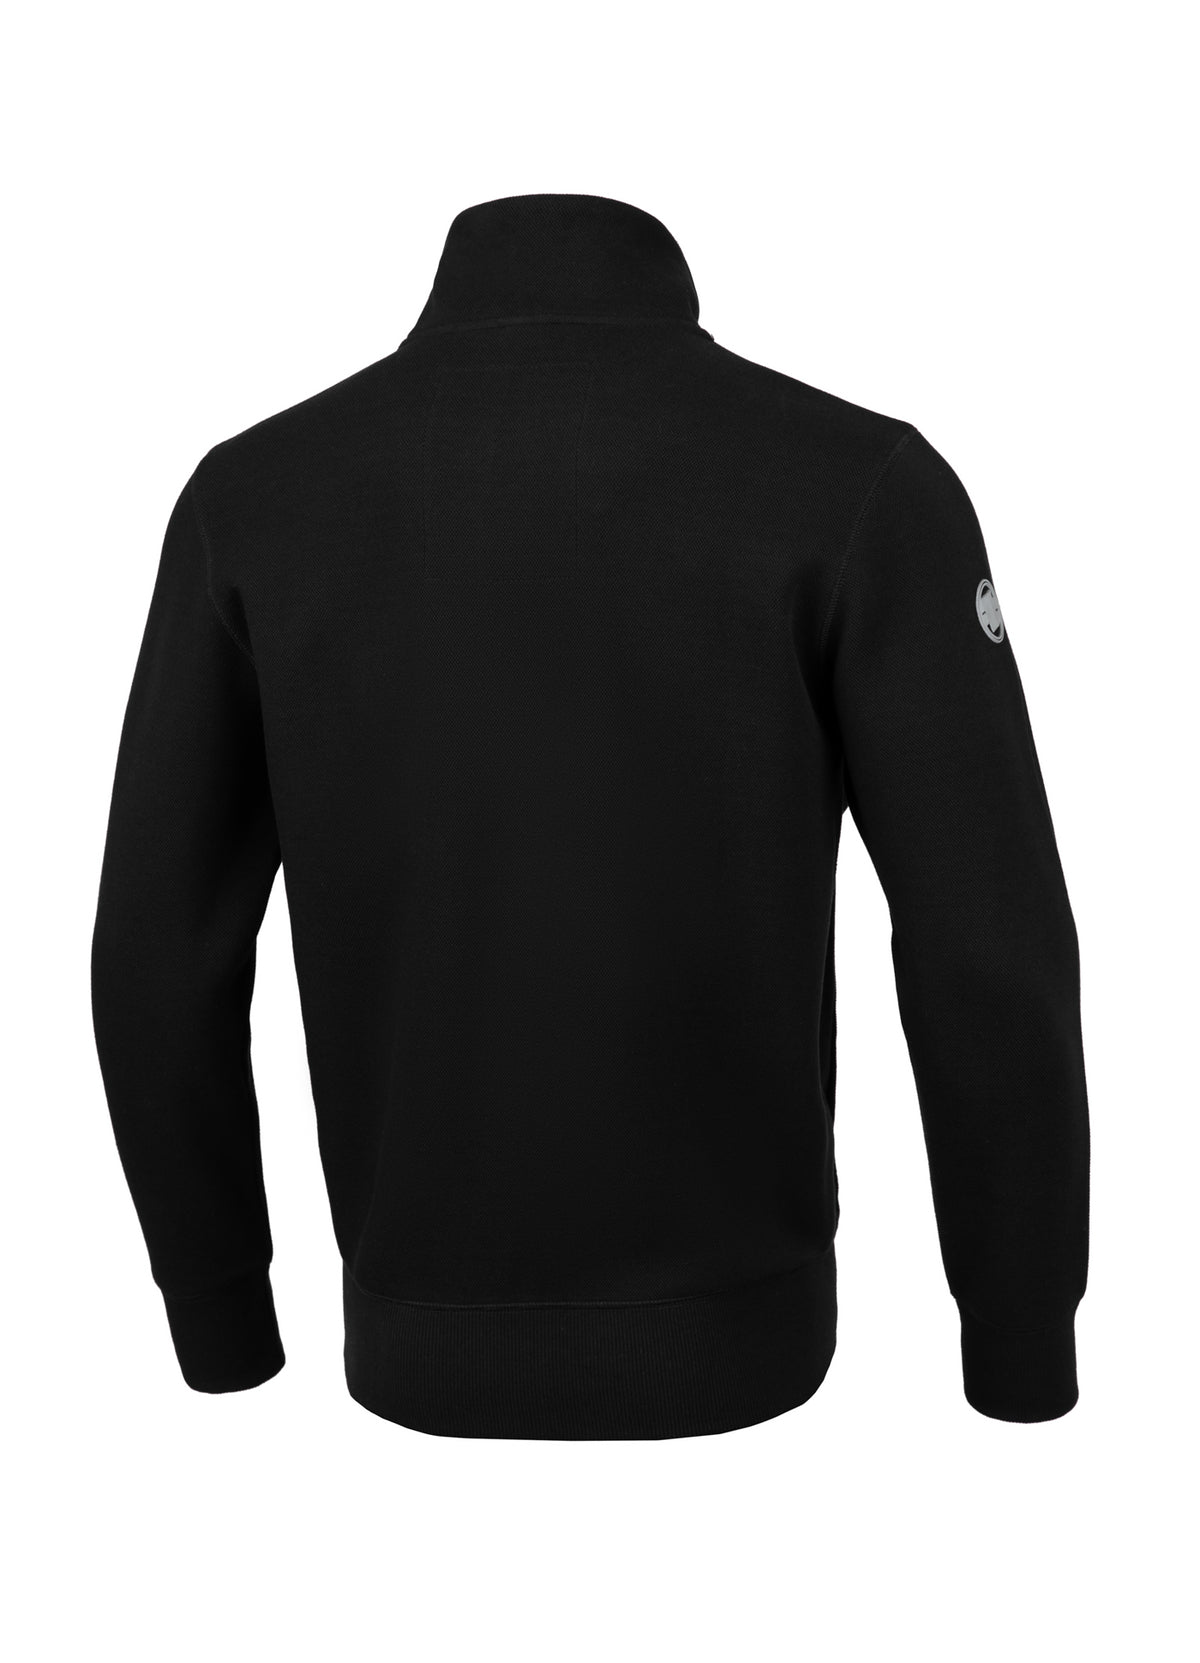 ADCC Premium Pique Black Sweatjacket